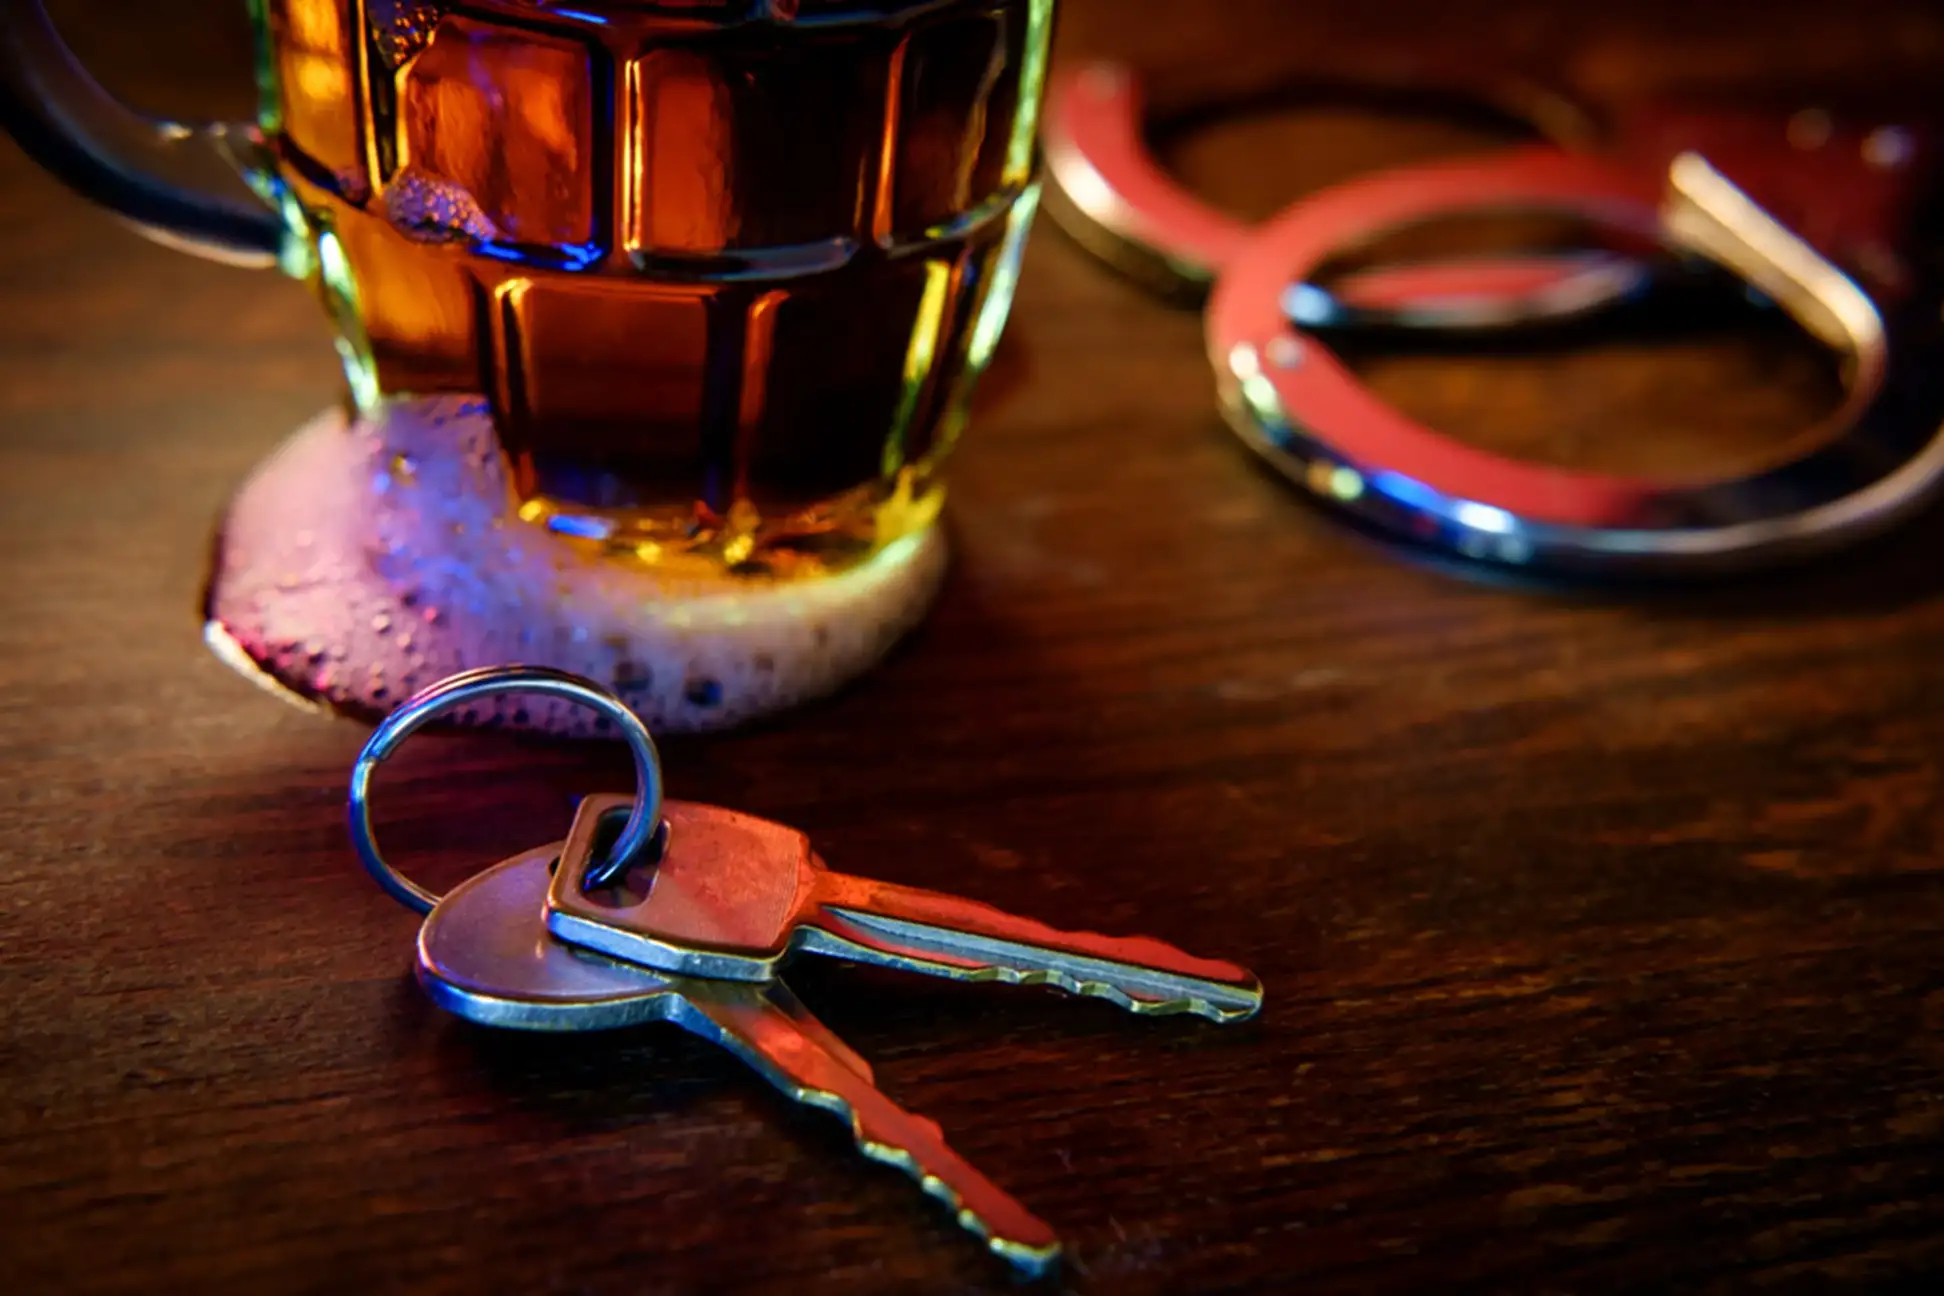 beer mug and keys on a table